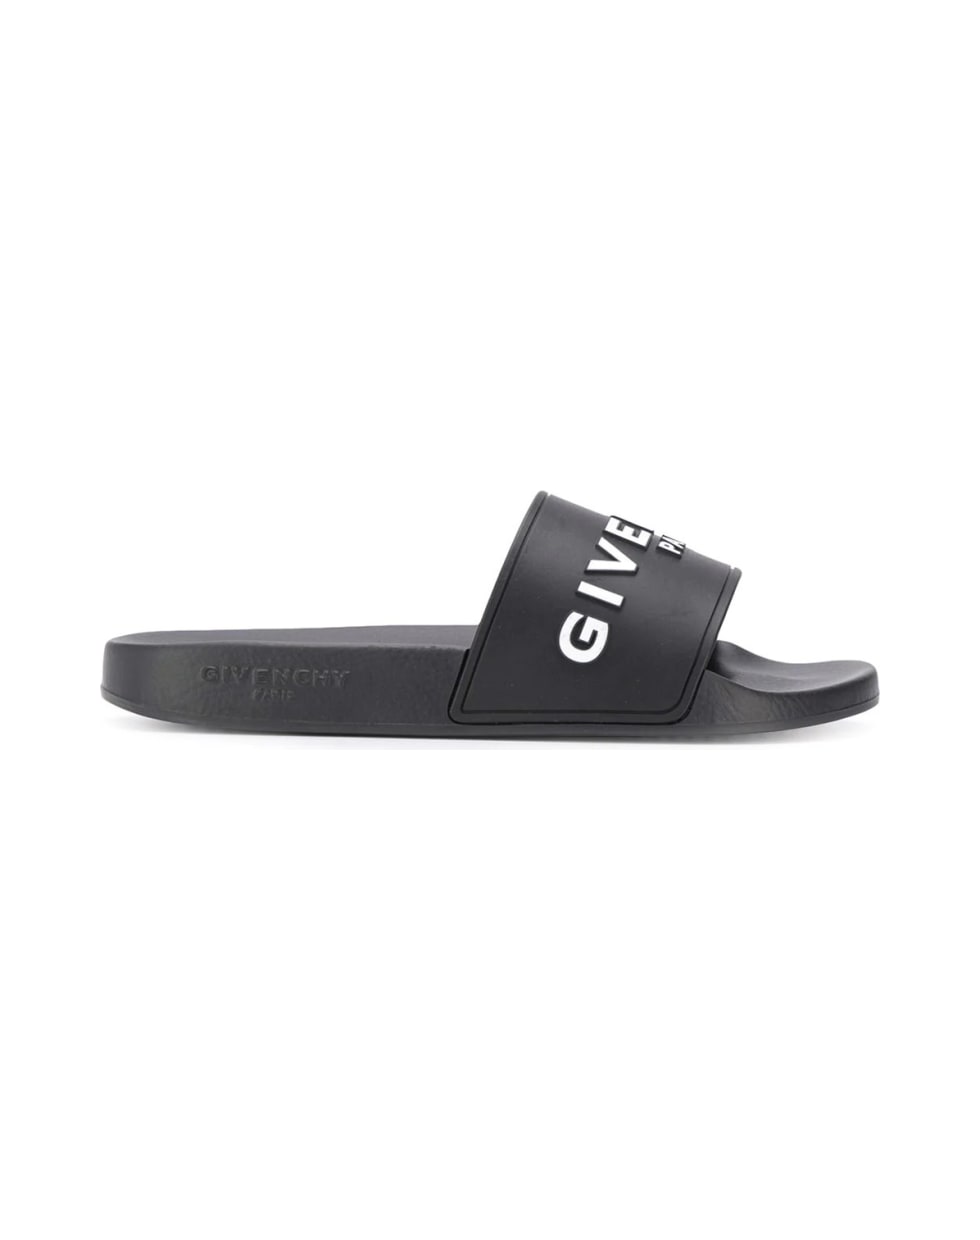 Givenchy Slide Flat Sandal - Black